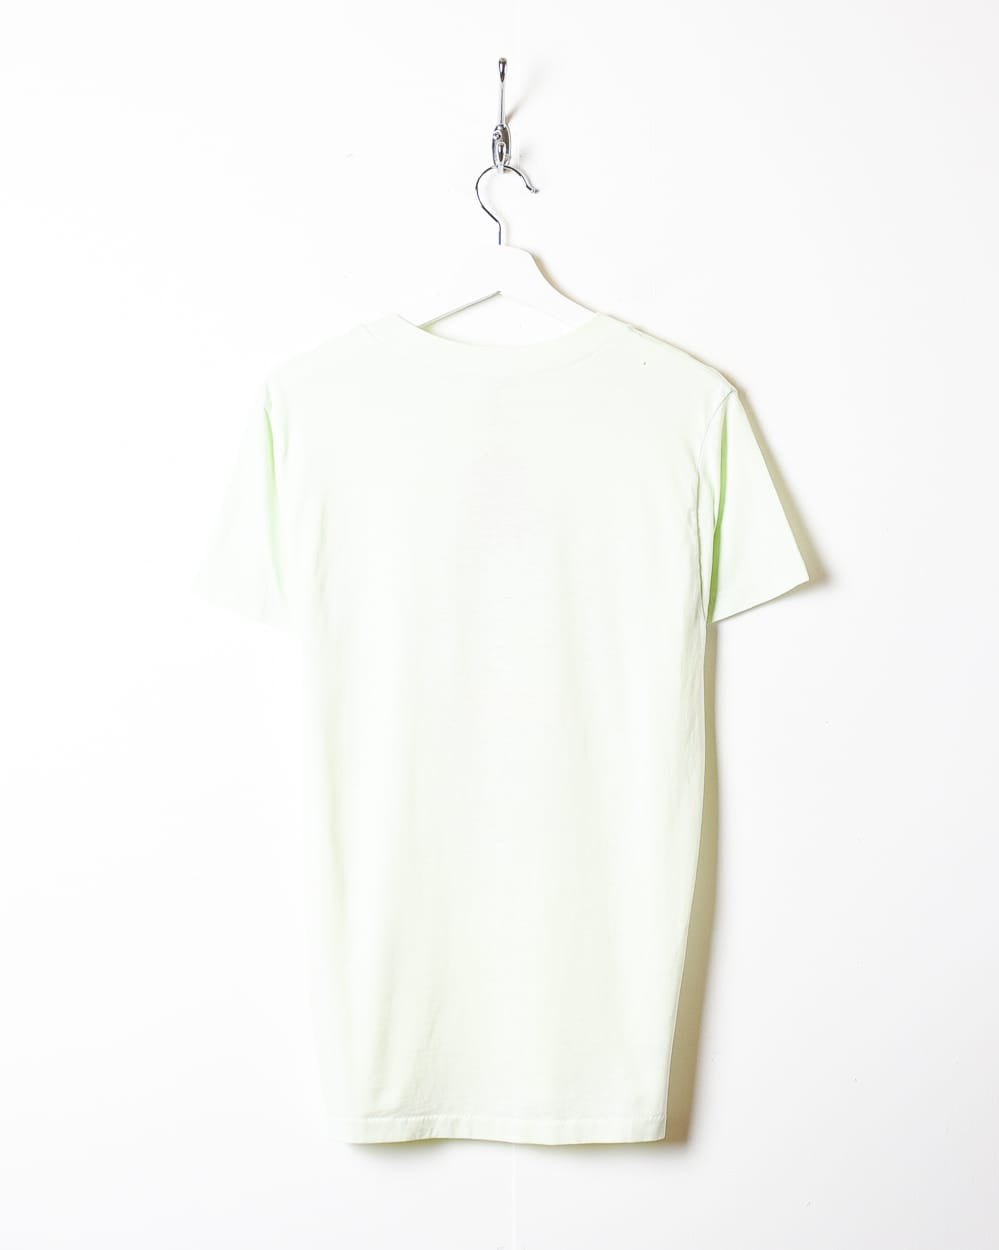 Green Branson Vacation Single Stitch T-Shirt - Small